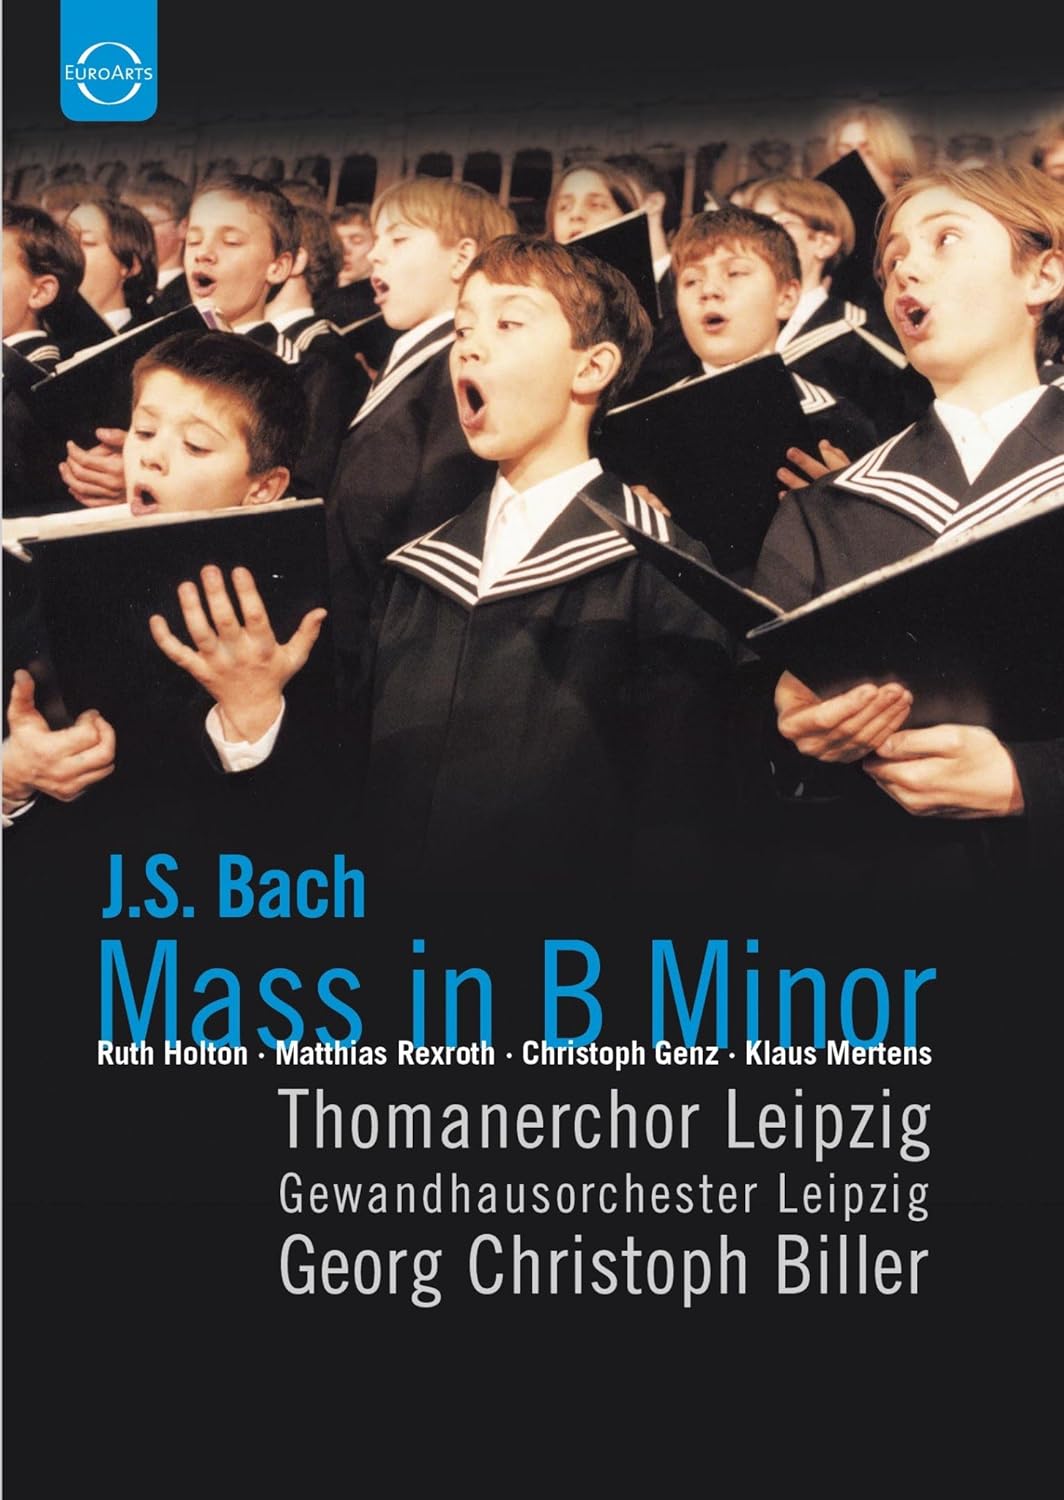 Bach: Mass In B Minor (DVD) | Ruth Holton, Matthias Rexroth, Christoph Genz, Klaus Mertens, Thomanerchor Leipzig, Gewandhausorchester Leipzig